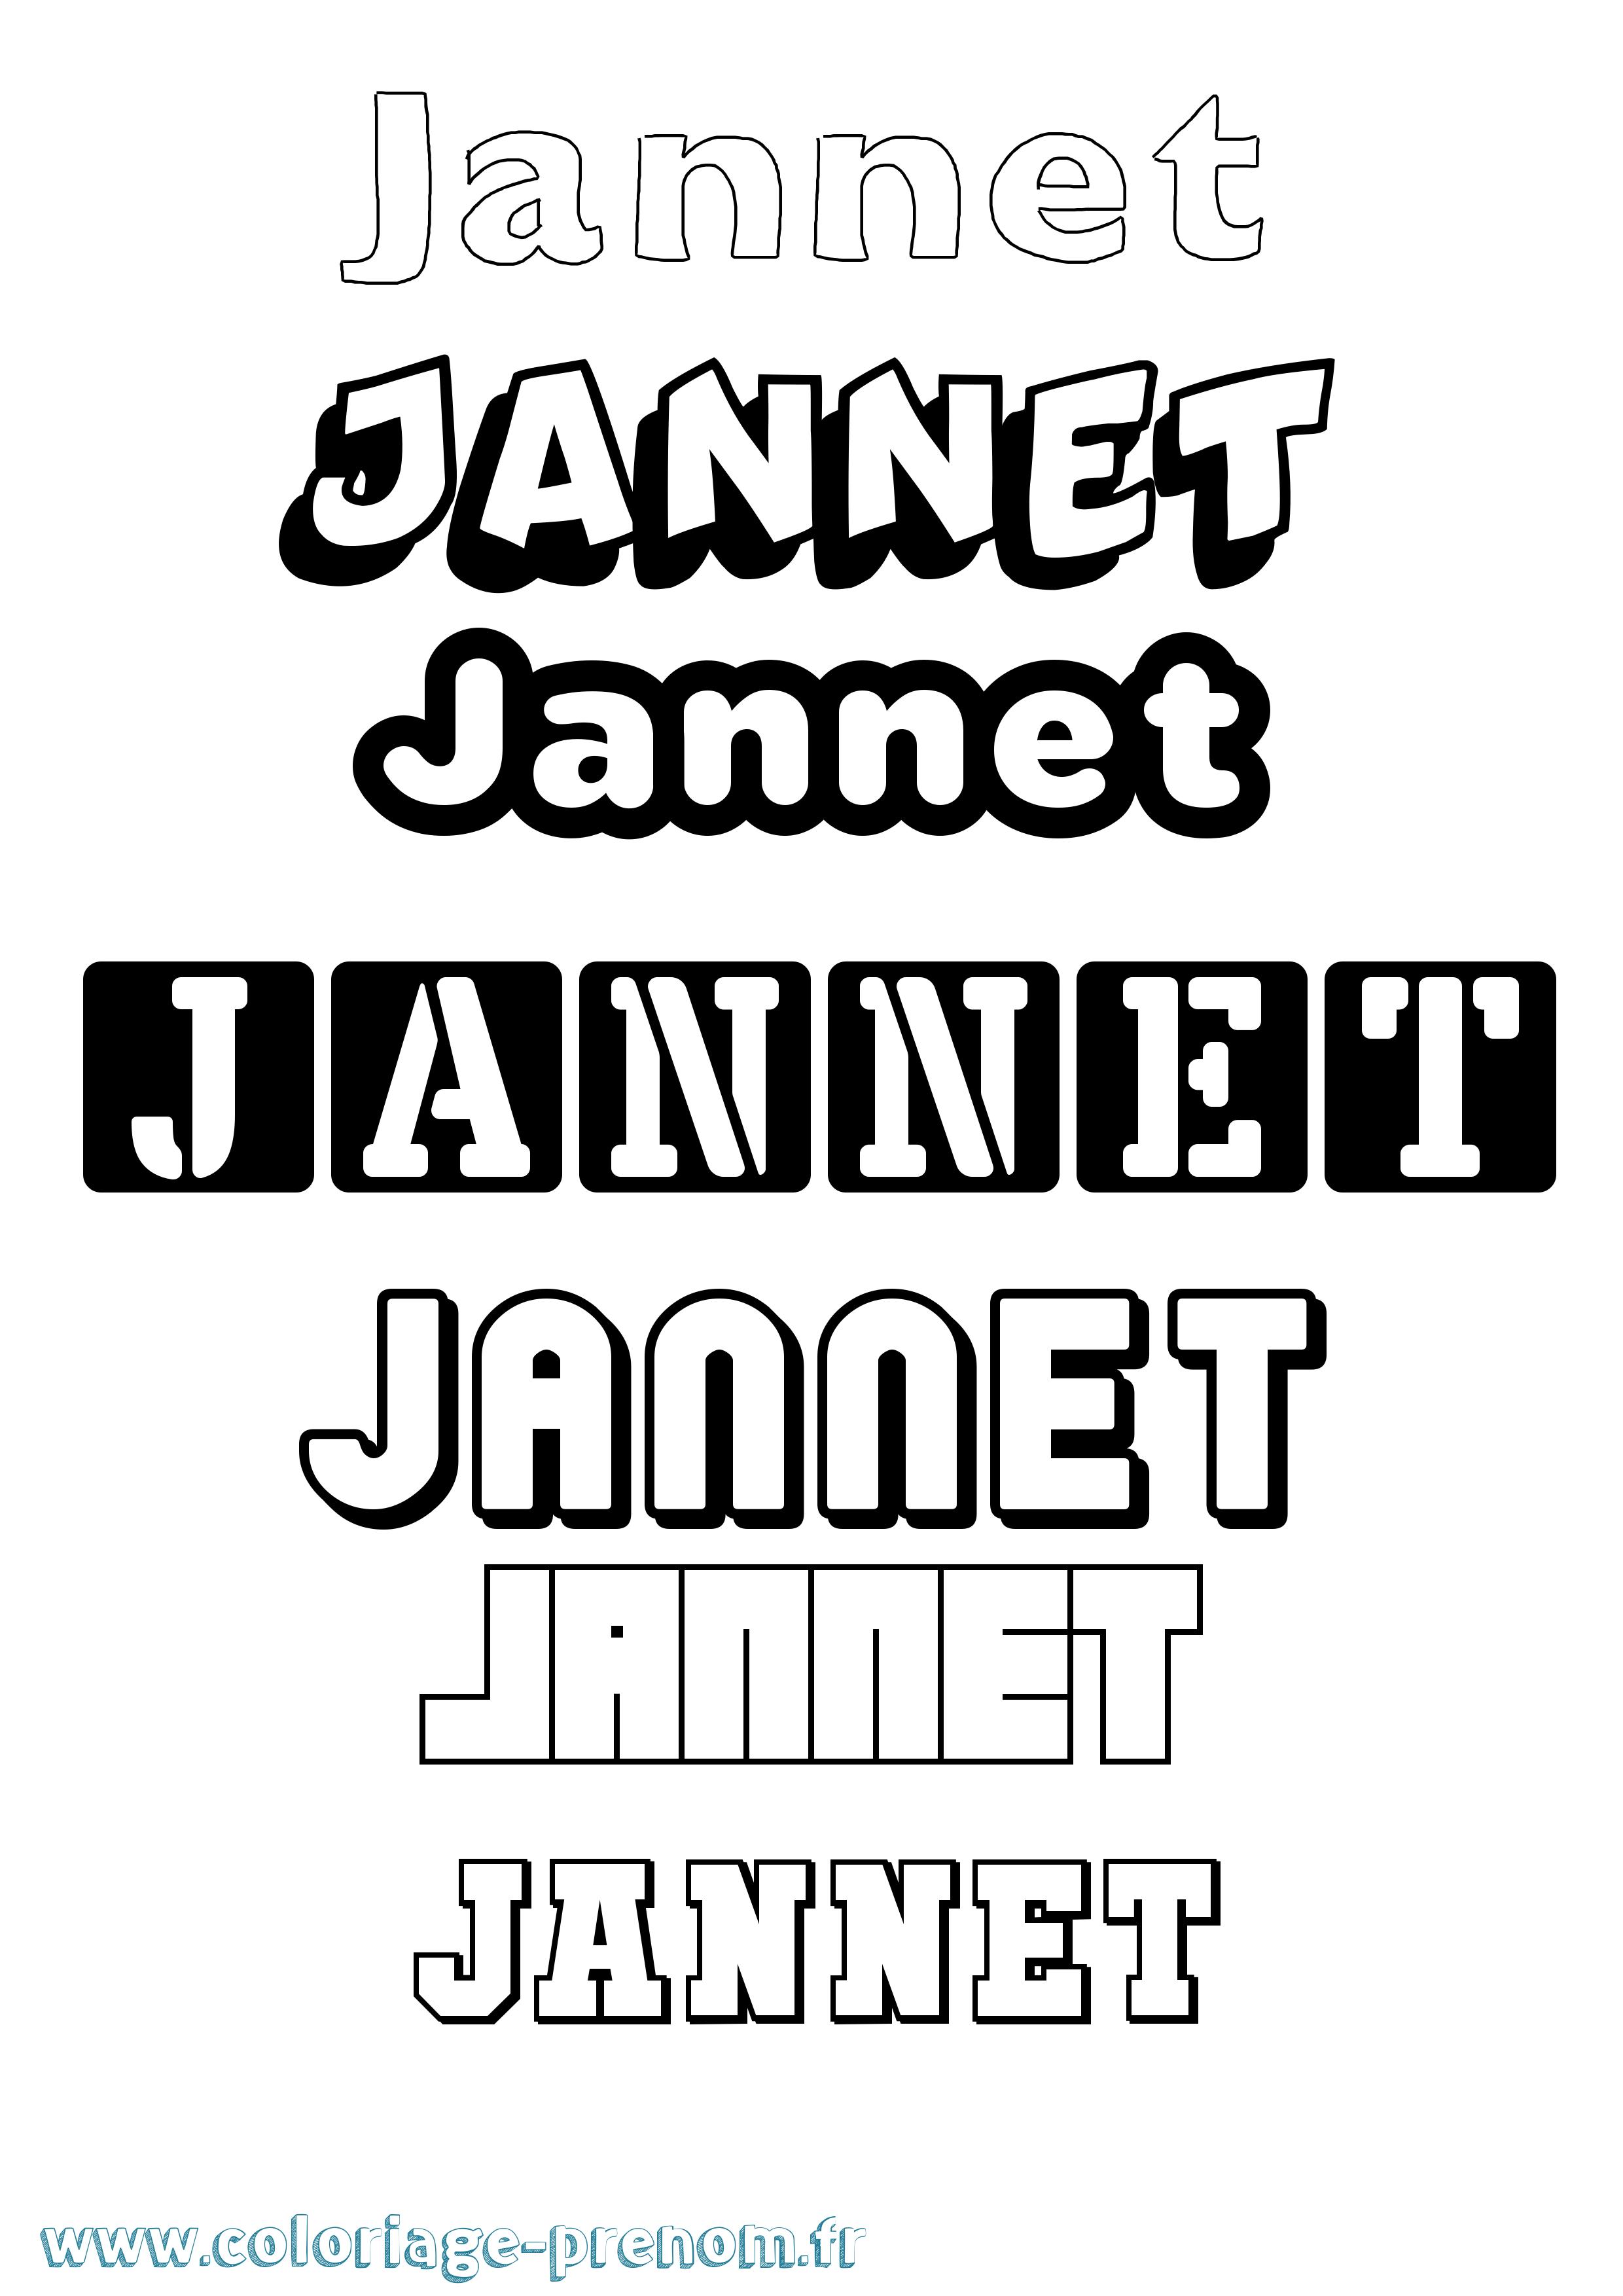 Coloriage du prénom Jannet : à Imprimer ou Télécharger facilement